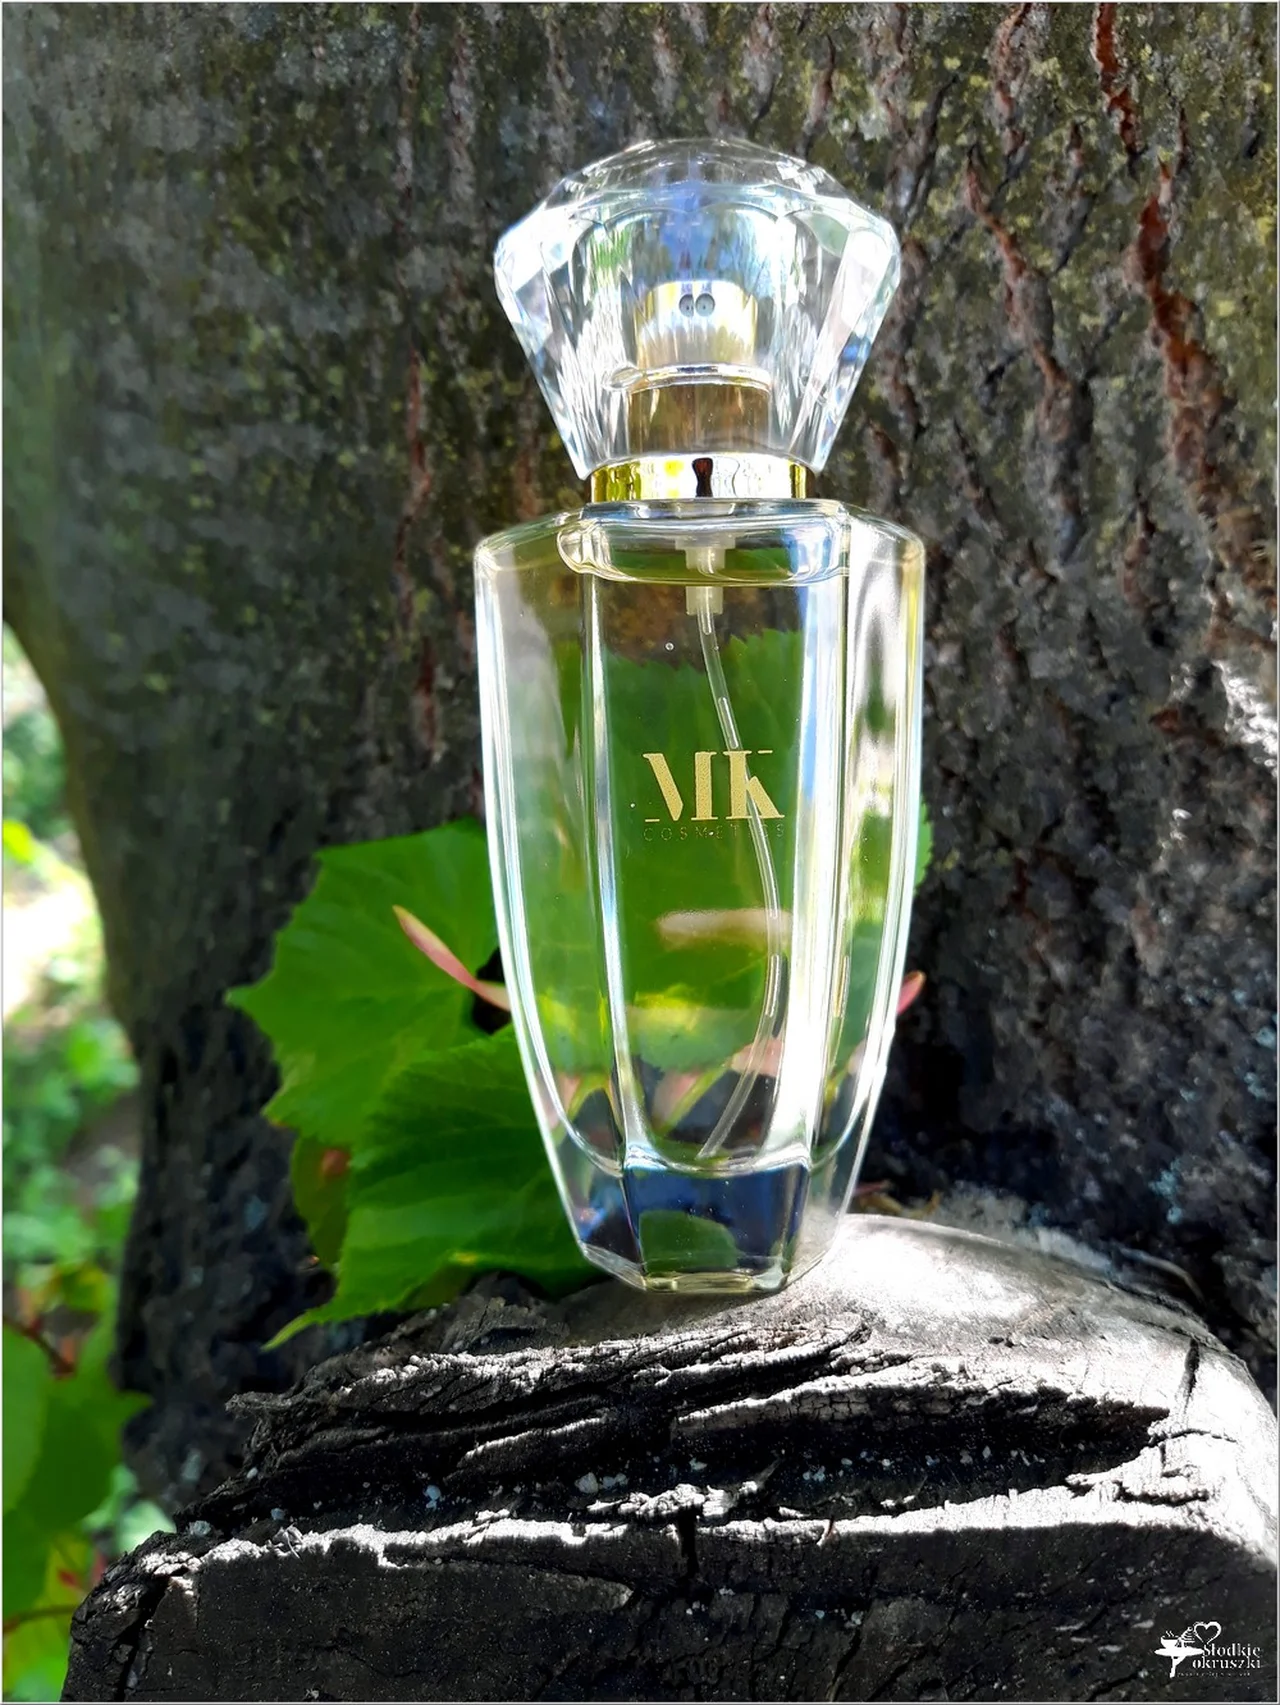 Perfumy MK – lane perfumy znanych światowych marek